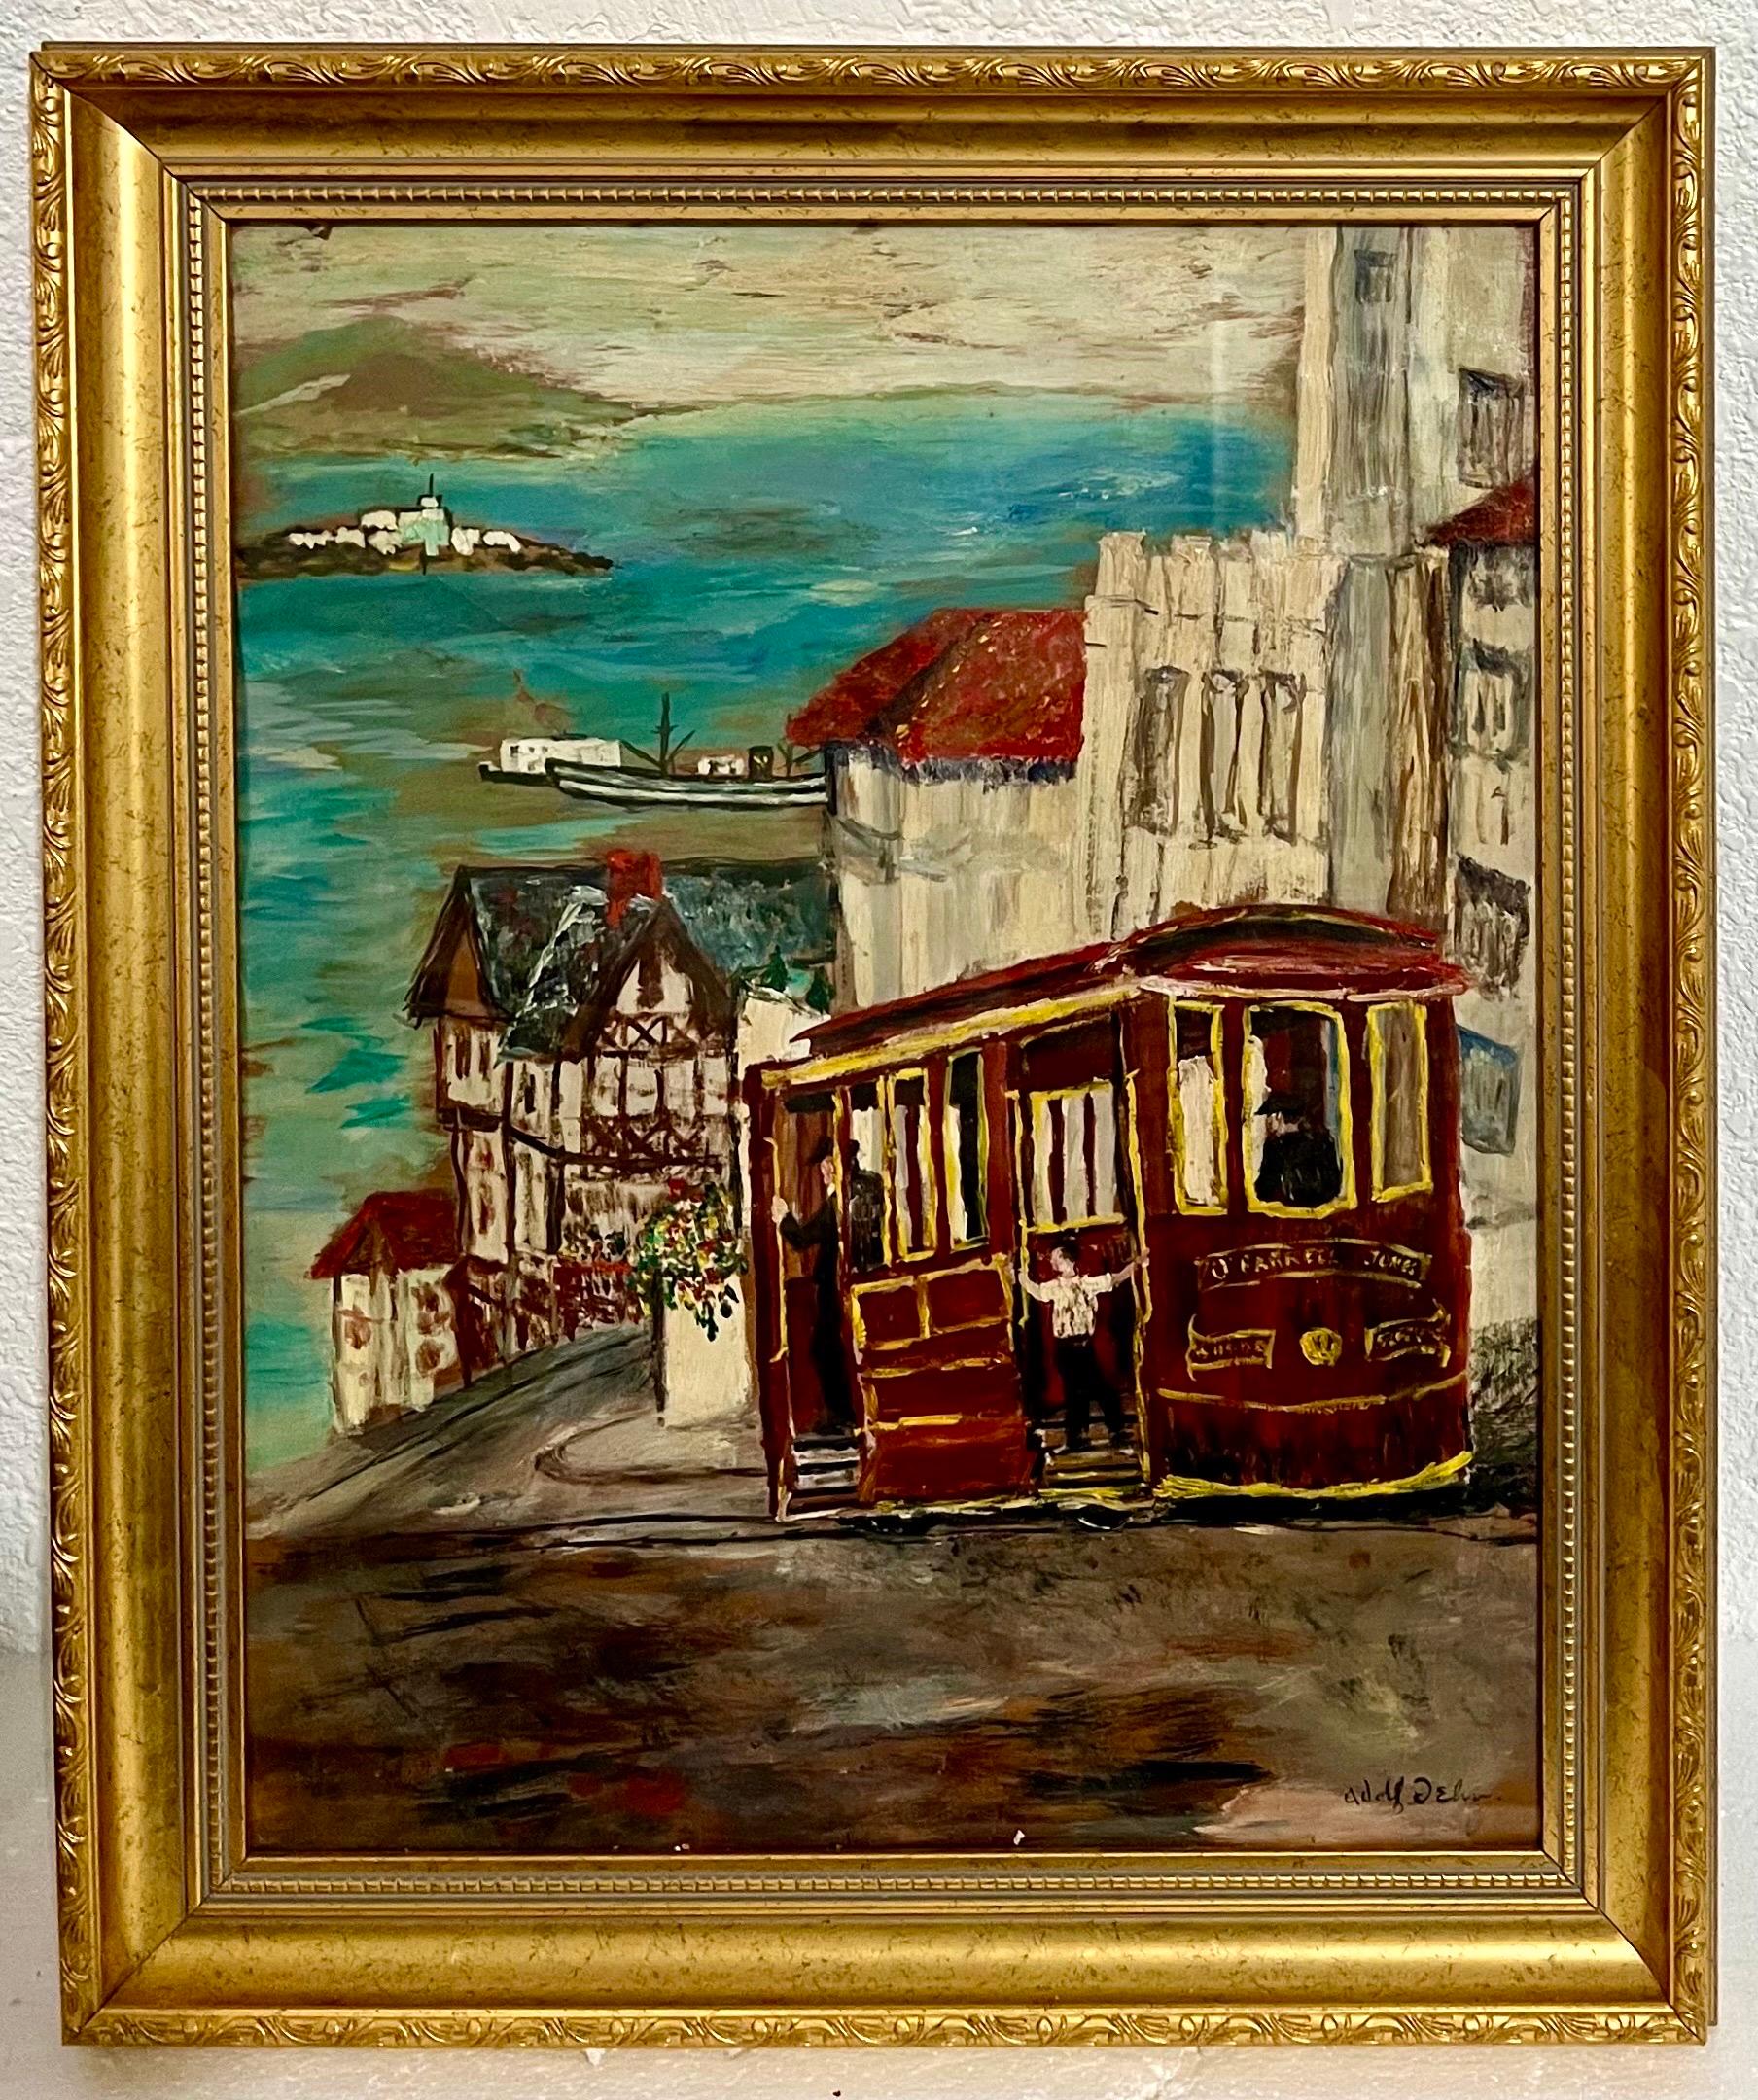 ADOLF ARTHUR DEHN (Amerikaner, 1895-1969) 
Straßenszene in der San Francisco Bay Area mit Trolley, Straßenbahn und Cable Car mit der Bucht und der Insel Alcatraz im Hintergrund.
Handsigniert LRC.
Visier 19